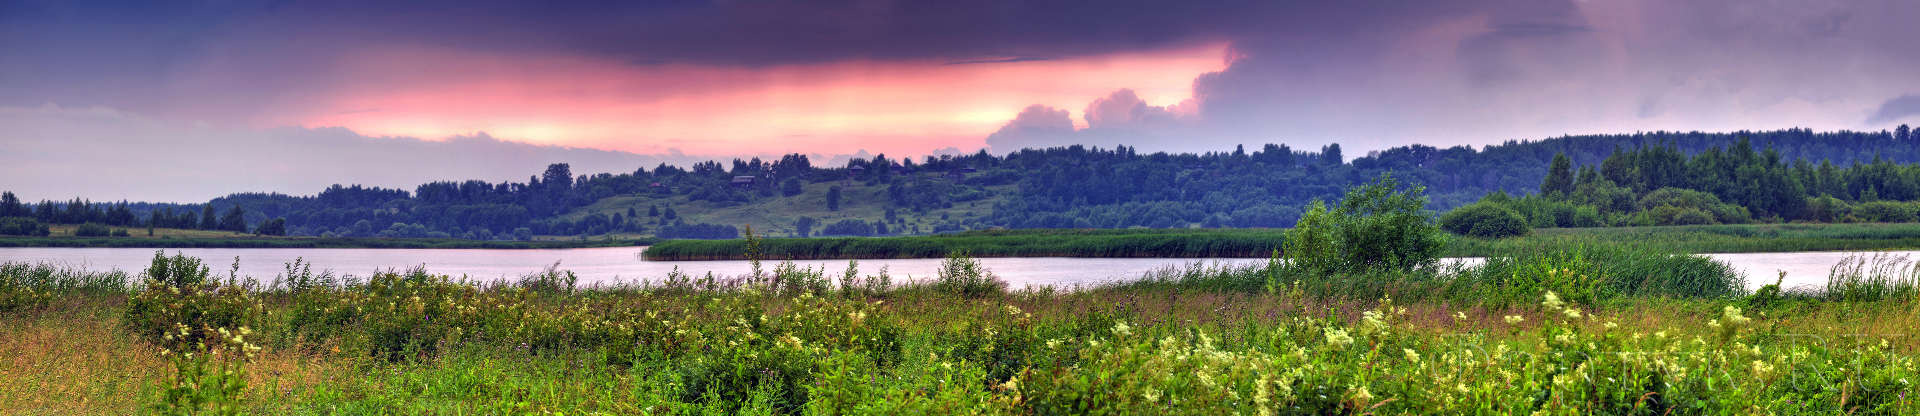 панорамный пейзаж с долины реки на закате